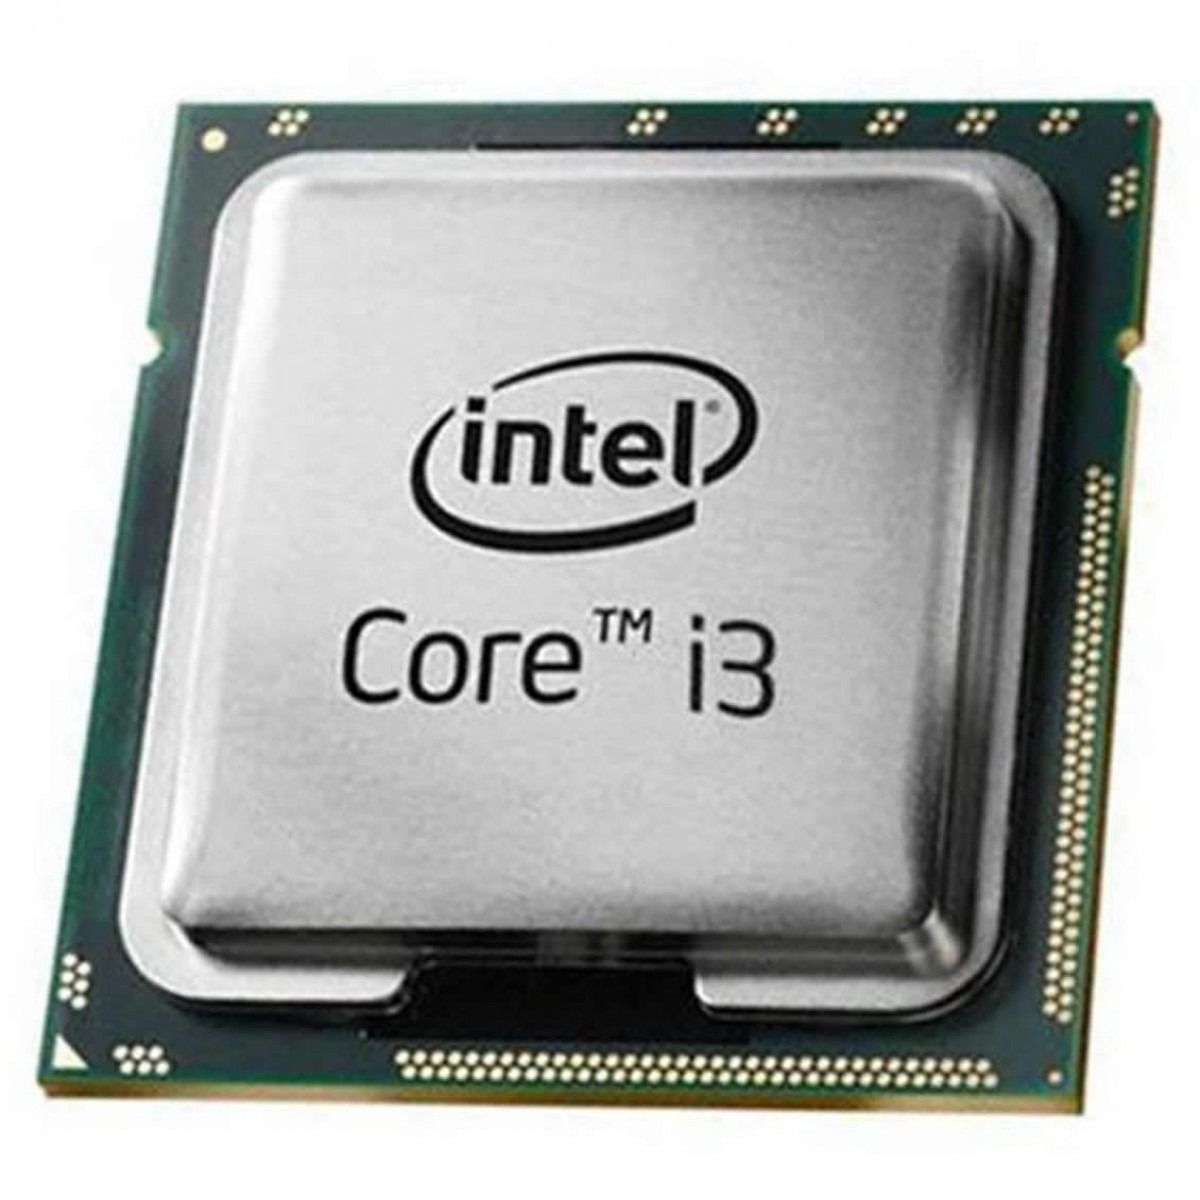 Интел коре ай3